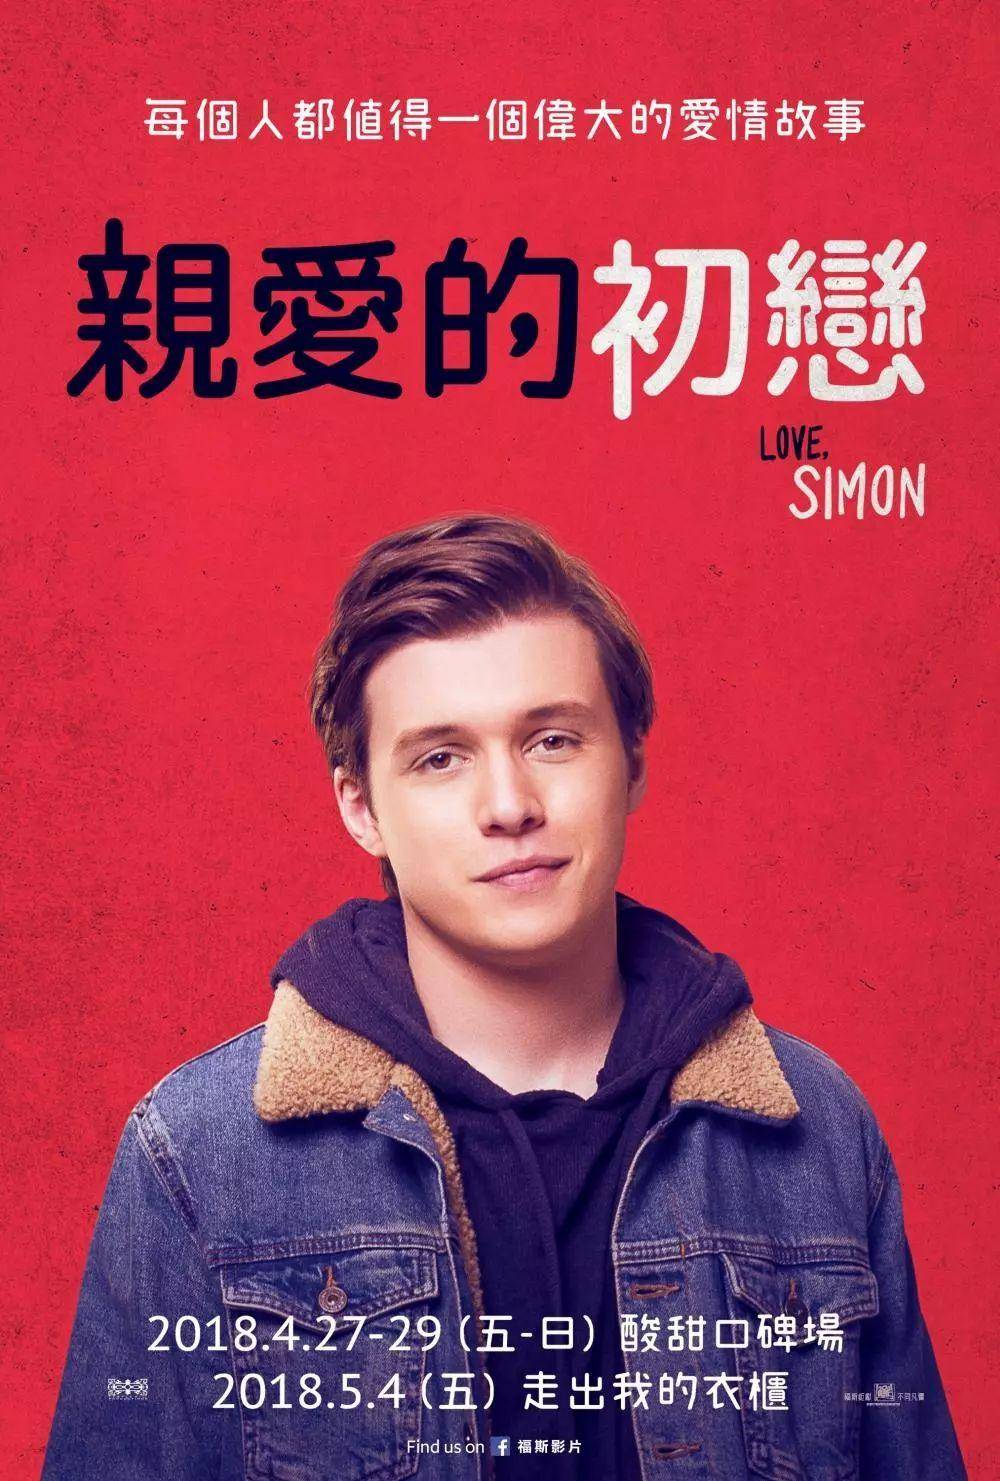 在北京国际电影节看《爱你, 西蒙》想到的